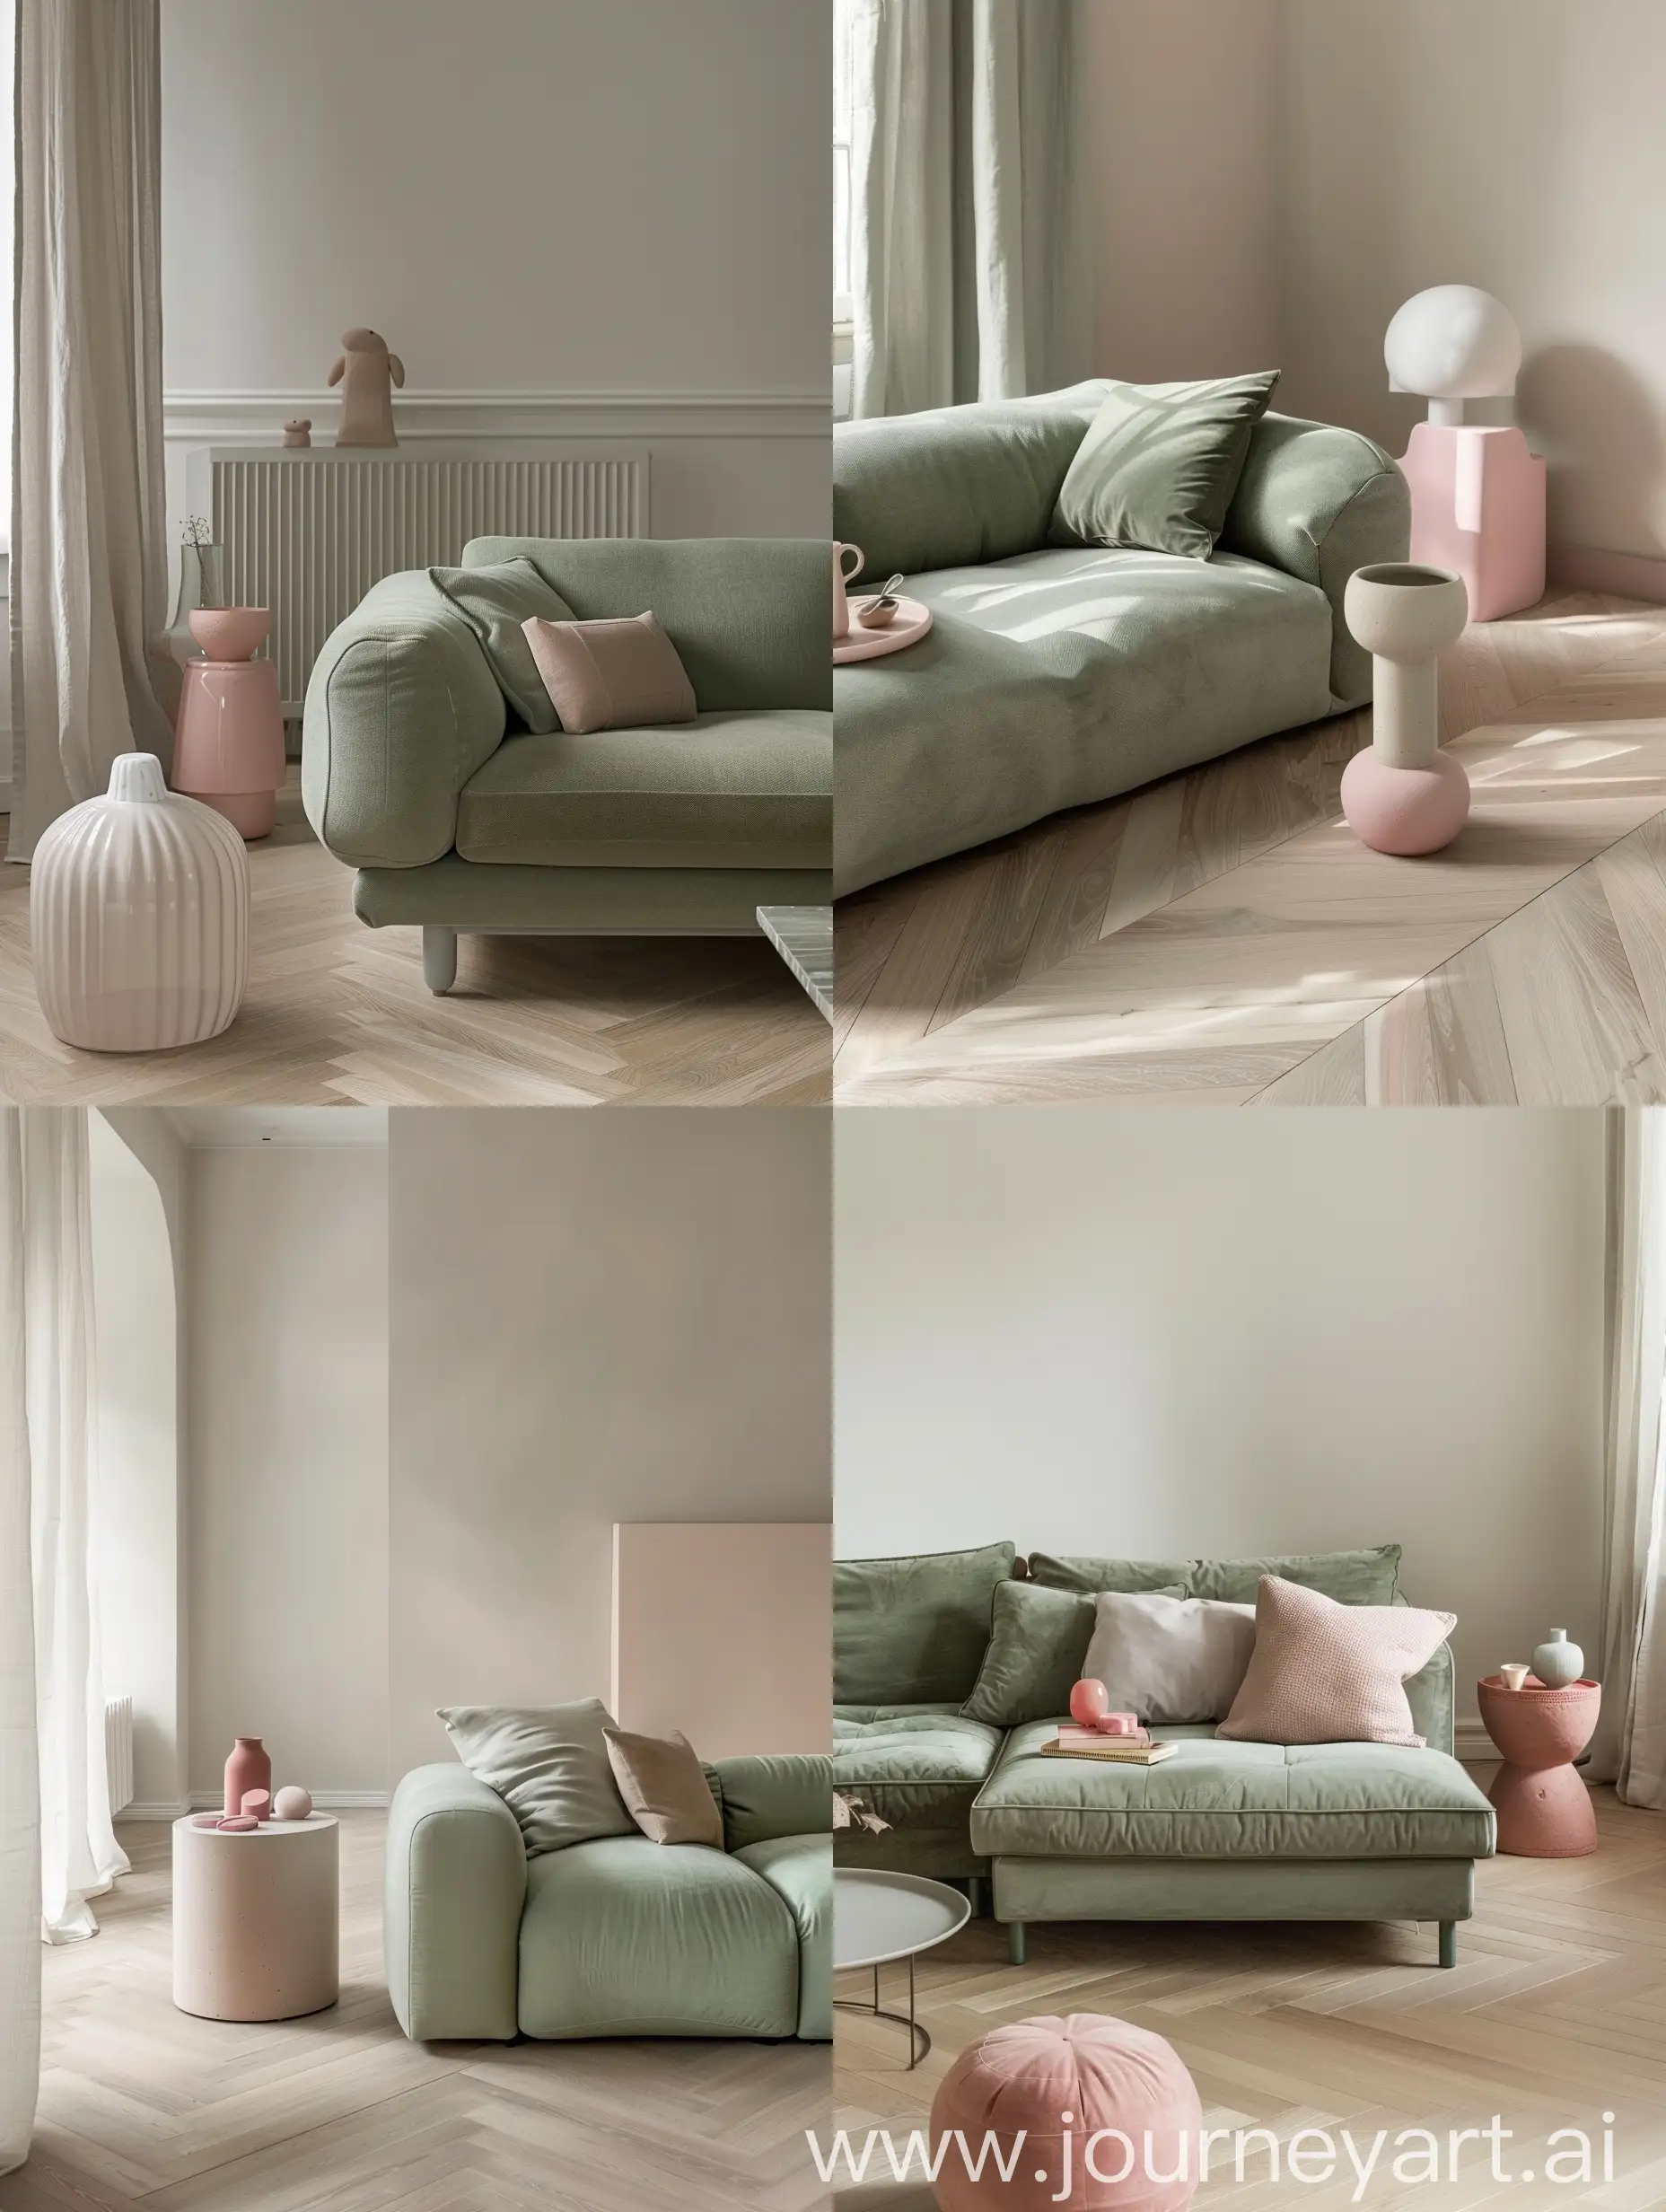 dettaglio di un soggiorno con divano verde salvia,  stile minimal  Pavimento parquet a spina ungherese chiaro. accessori rosa mattone